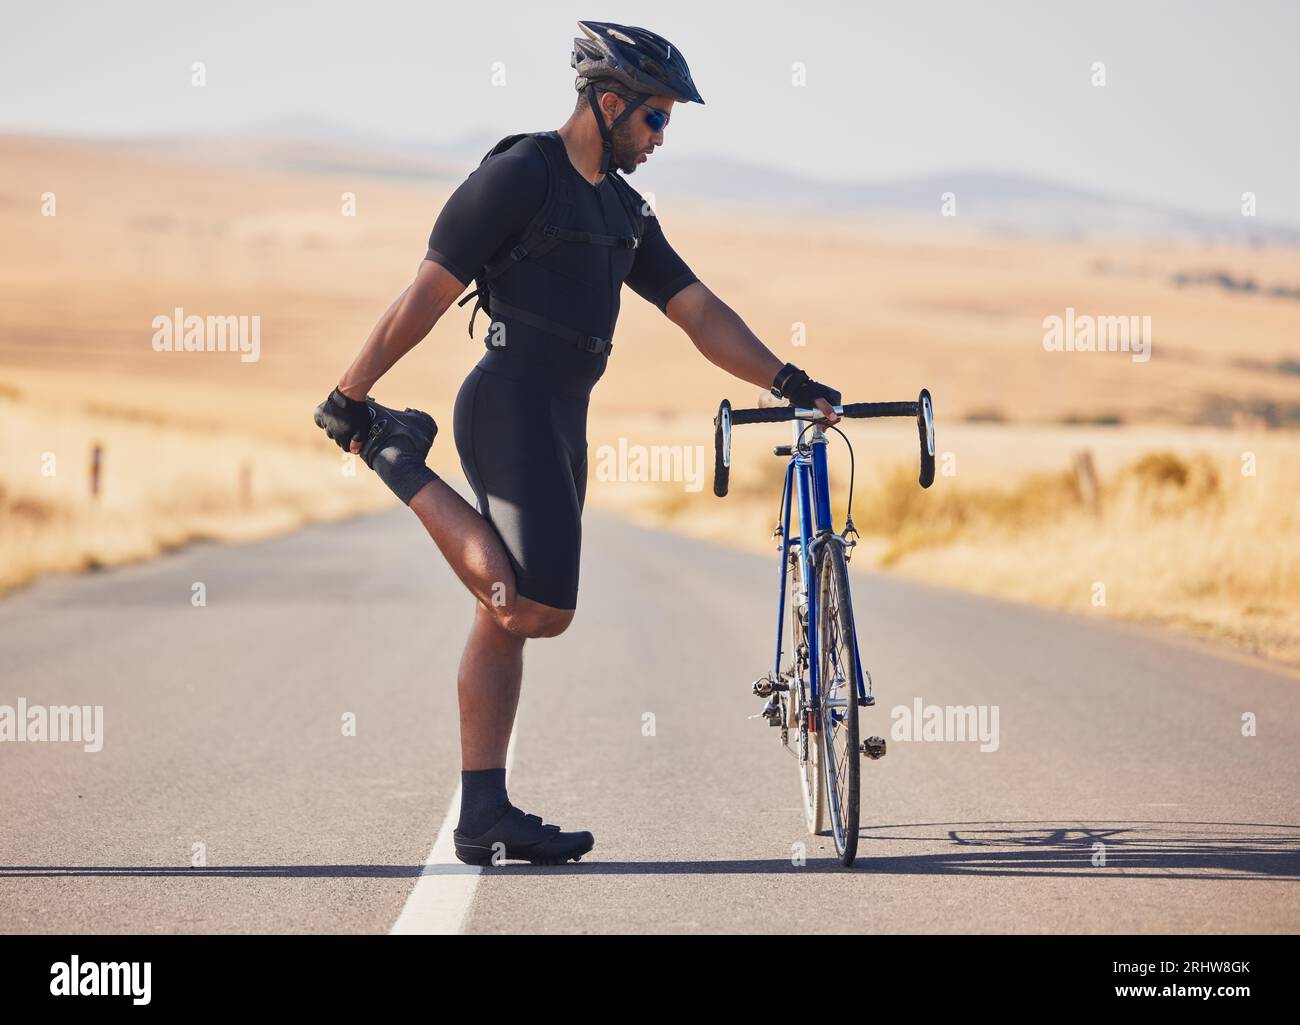 Fitness Rápido Y Un Hombre En Bicicleta Por La Carretera Para Practicar  Deportes Cardiovasculares O Maratones En Bicicleta. Ejerci Foto de archivo  - Imagen de ciclismo, velocidad: 280006992